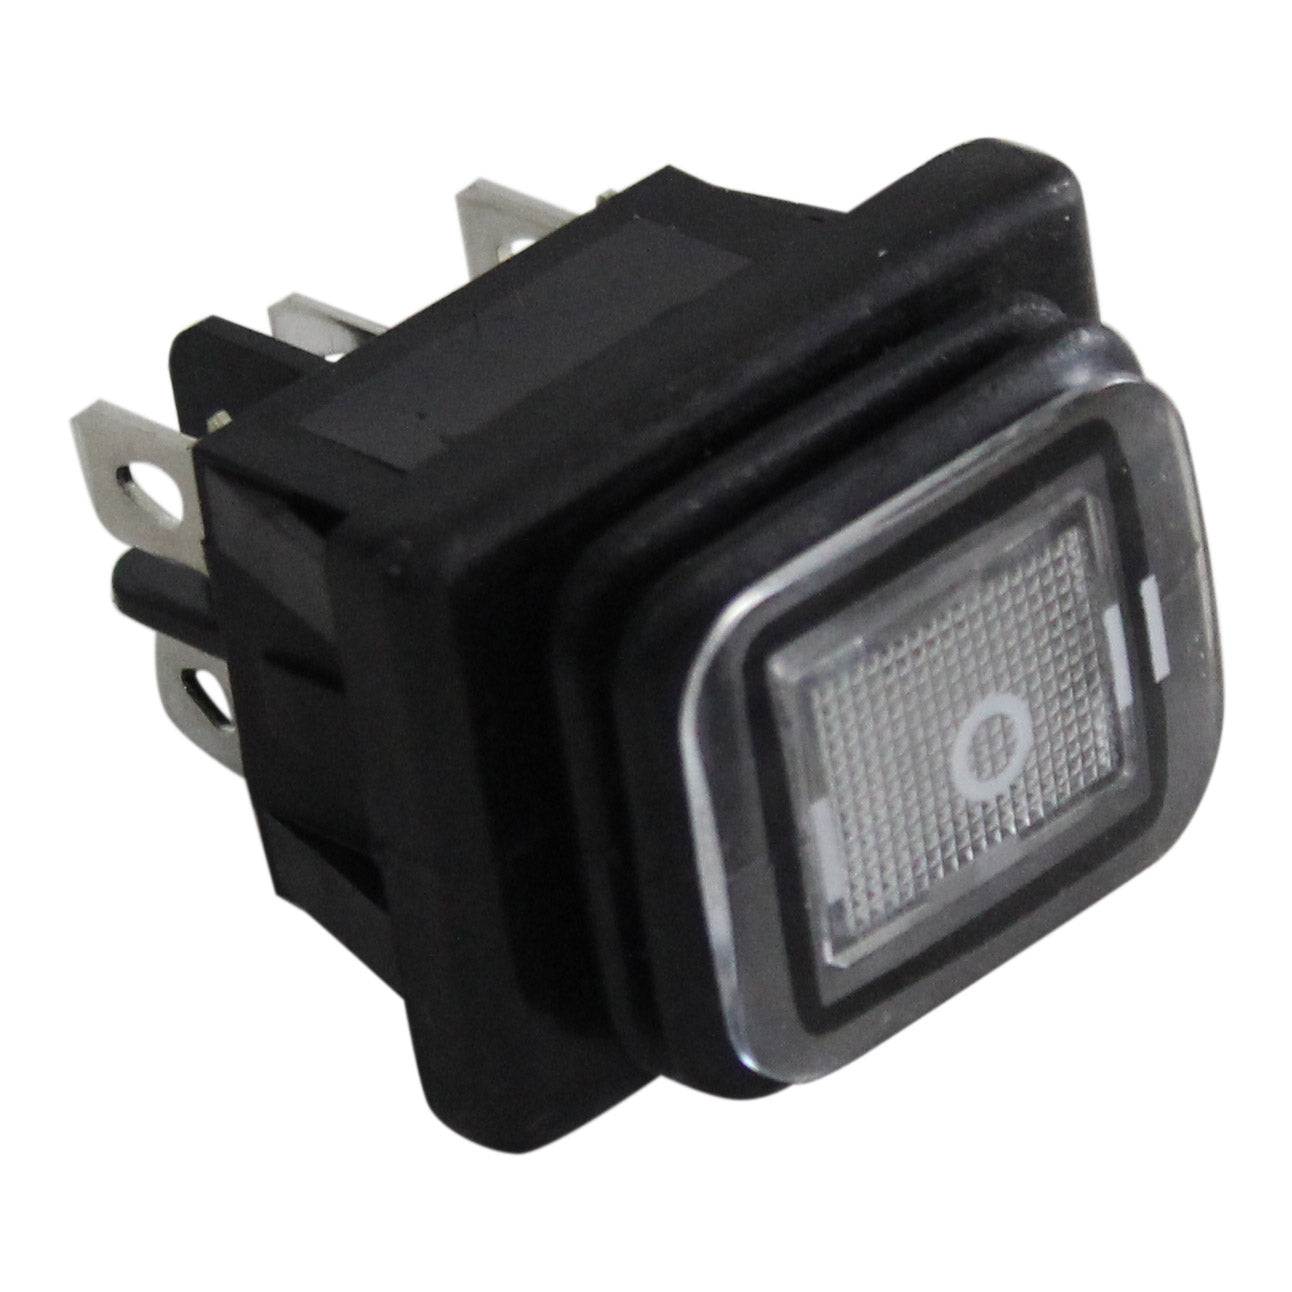 Interruptores de balancín LED impermeables Product Image